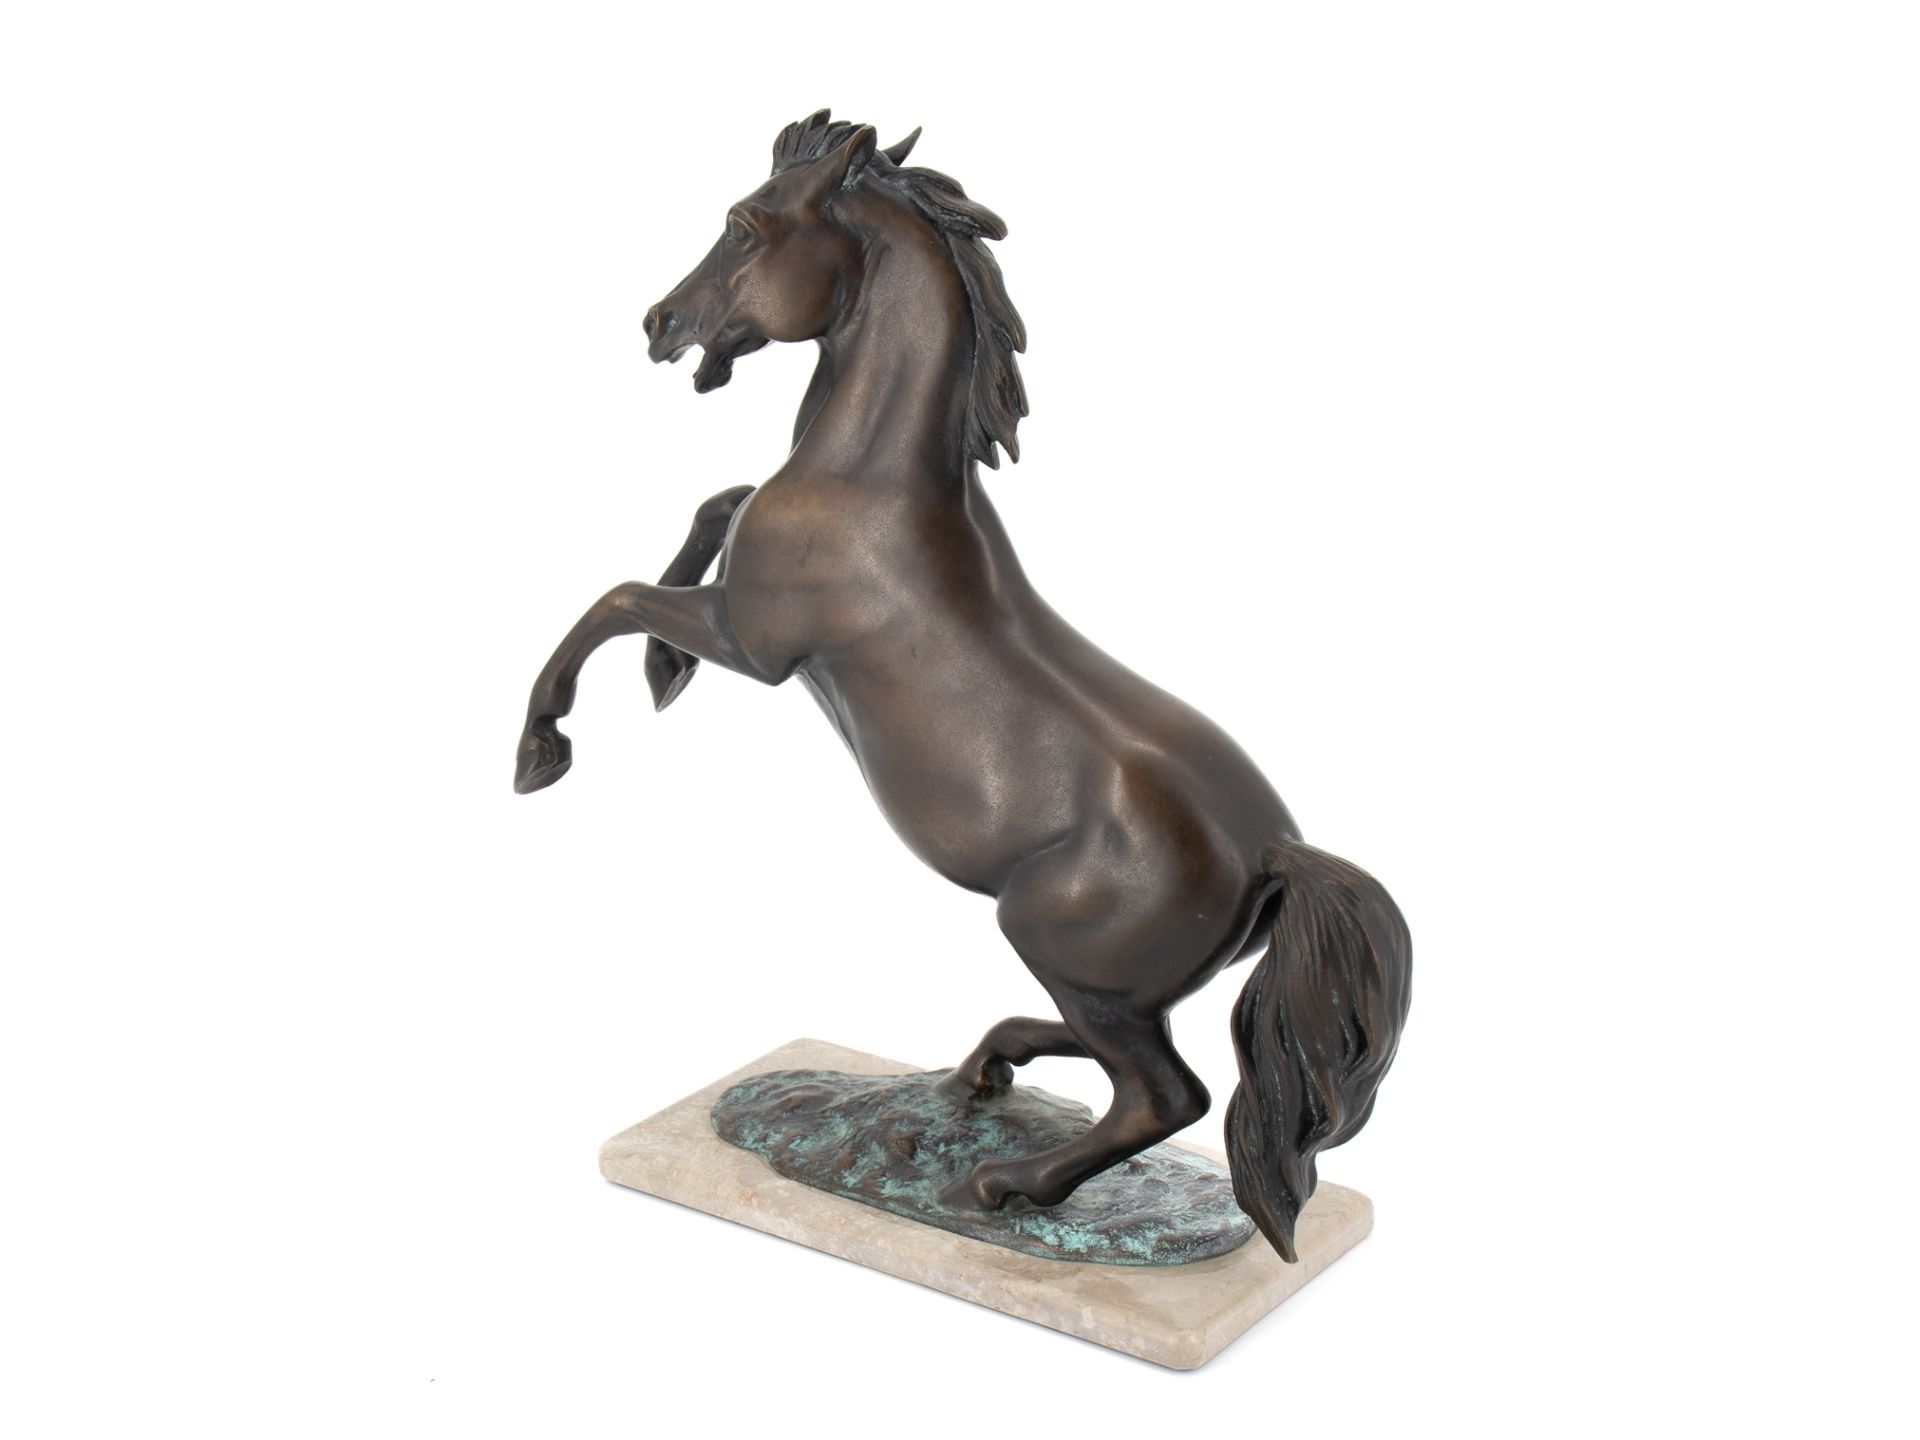 Diller Helmut (1911 - 1984), Bronzeskulptur "Steigendes Pferd" - Bild 3 aus 9